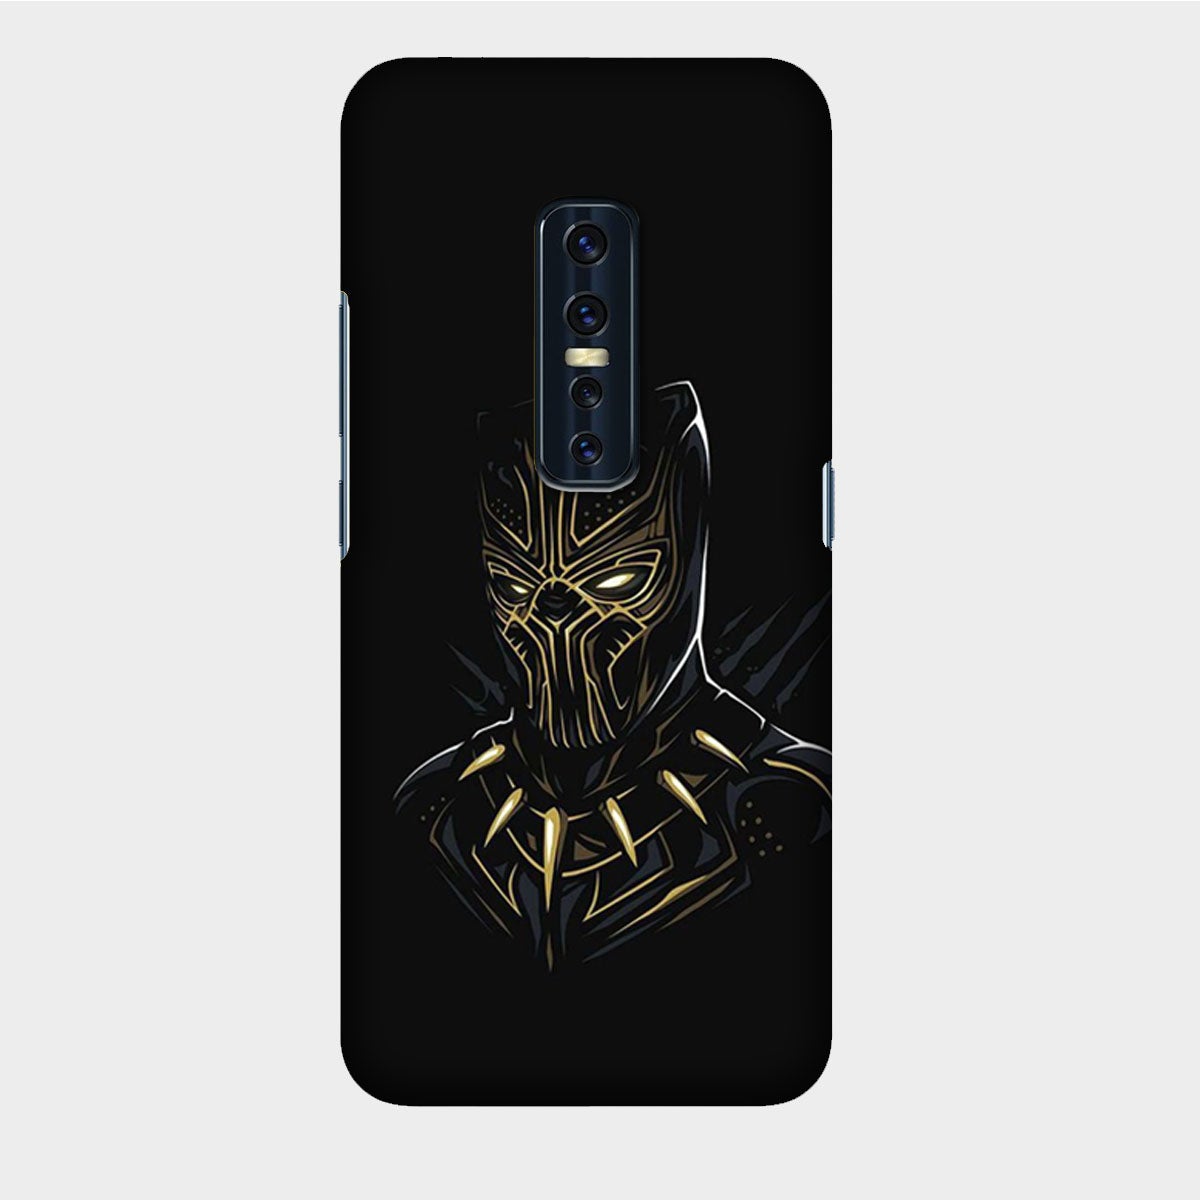 Black Panther - Golden & Black - Mobile Phone Cover - Hard Case - Vivo